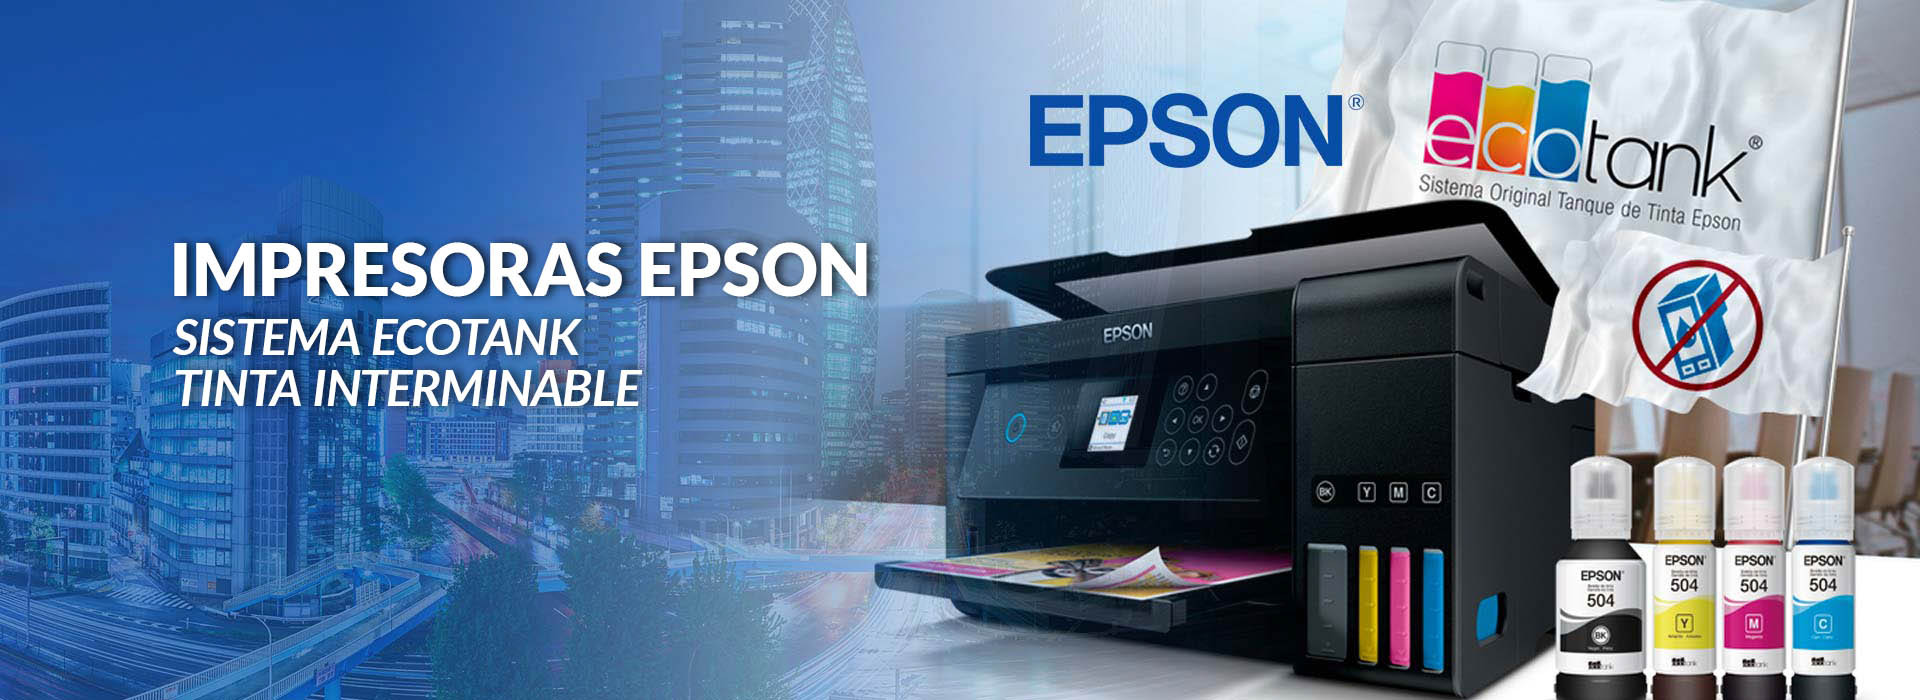 Epson-3